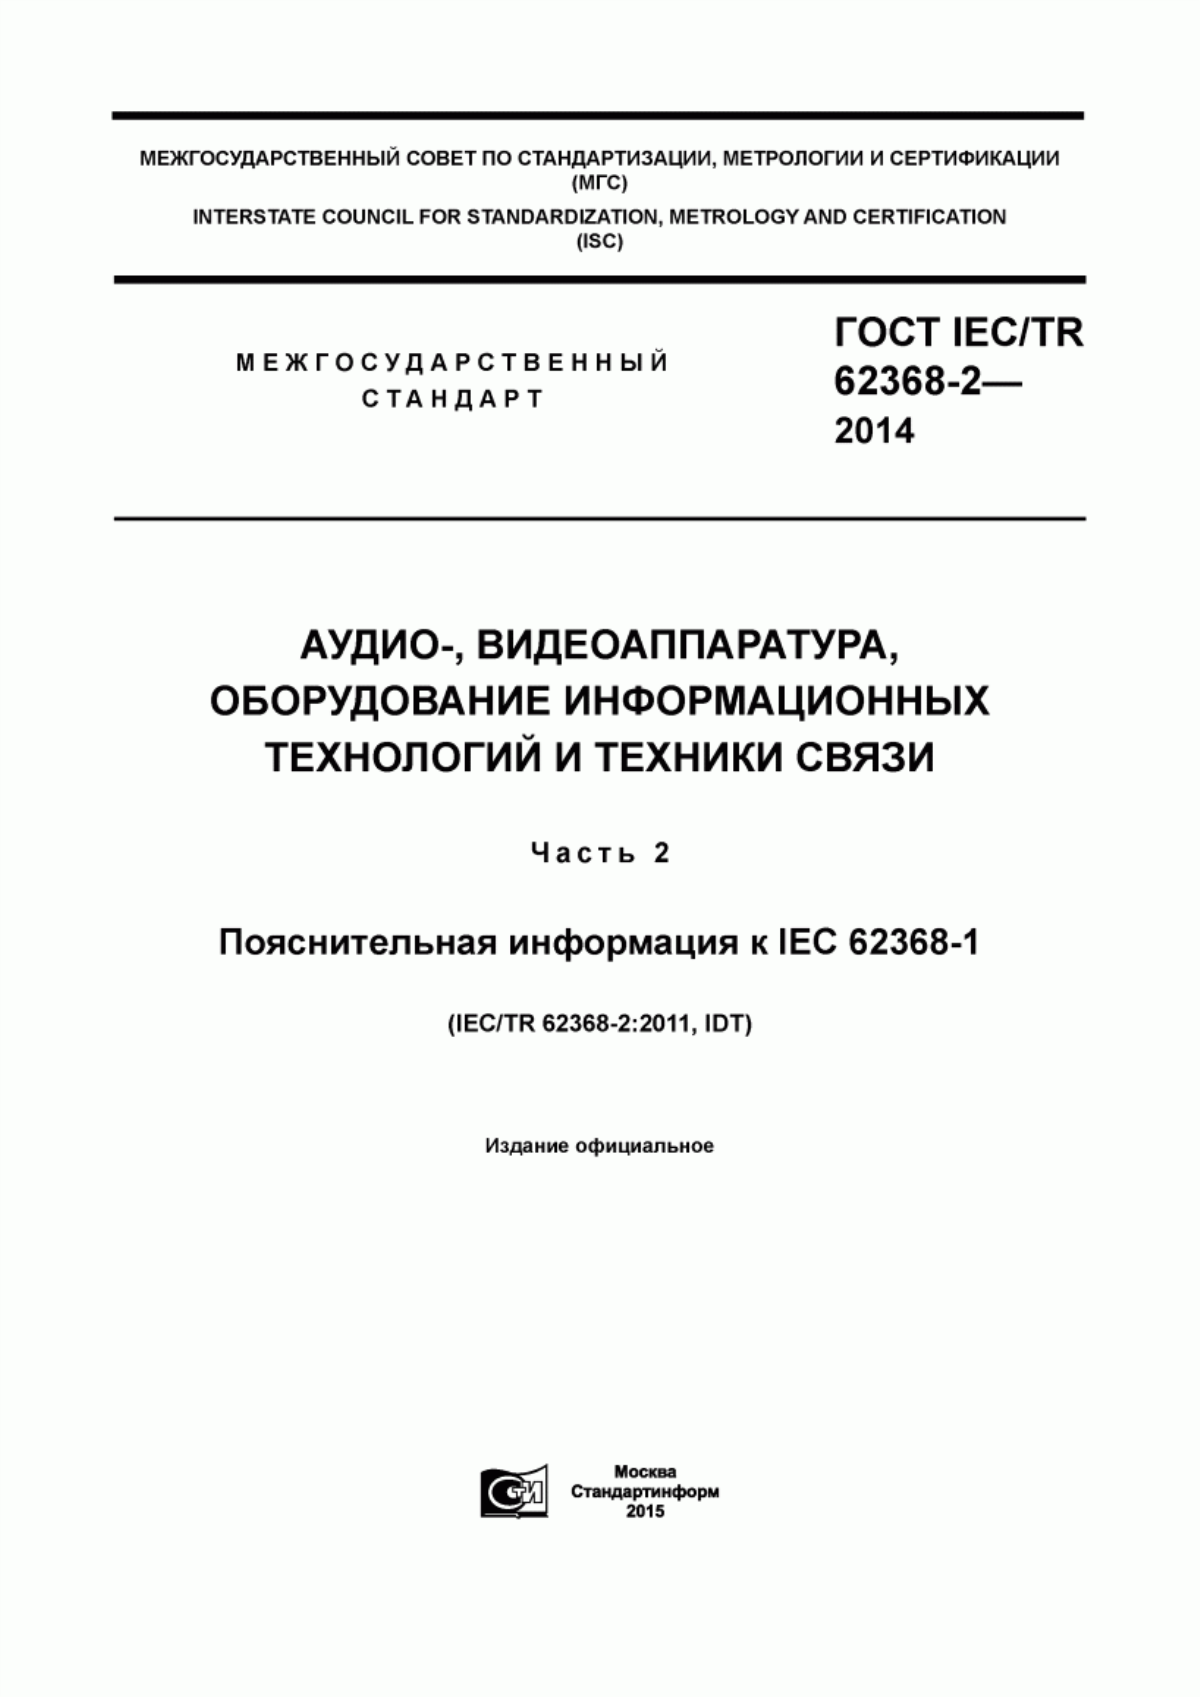 ГОСТ IEC/TR 62368-2-2014 Аудио-, видеоаппаратура, оборудование информационных технологий и техники связи. Часть 2. Пояснительная информация к IEC 62368-1